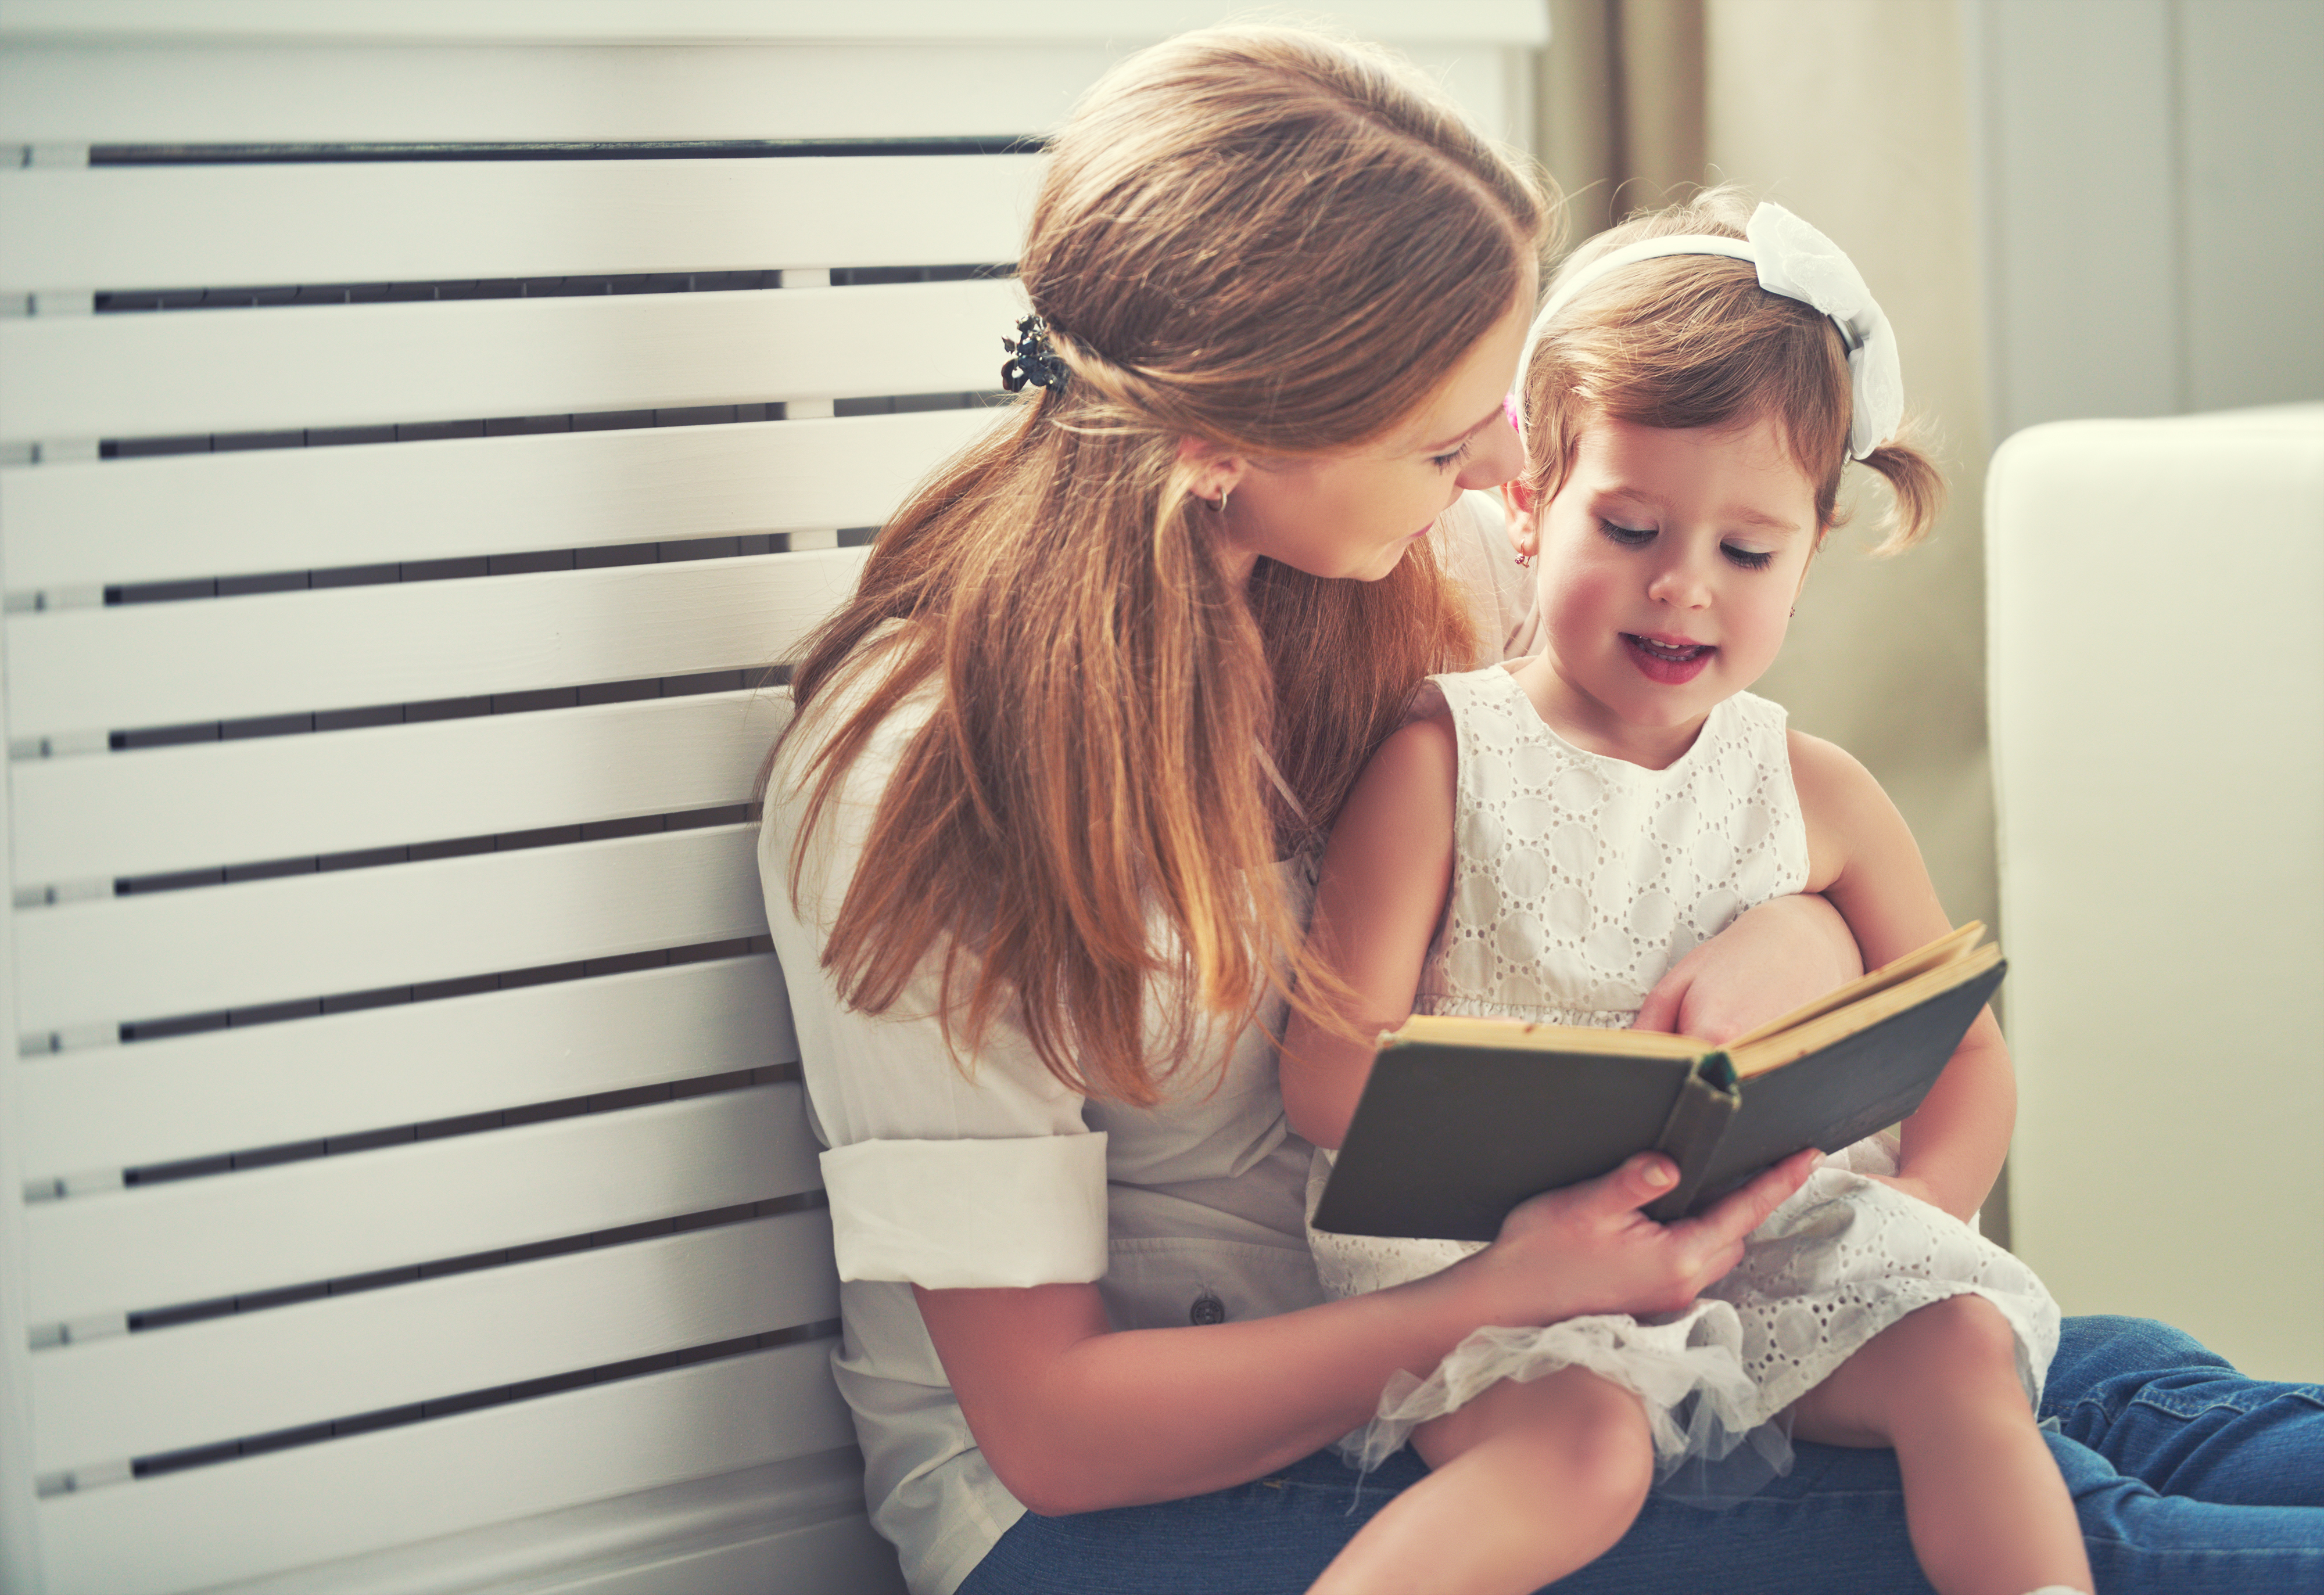 Читать мама с другом. Книги для детей. Книги о маме для детей. Книга в руках мамы. Книга мамы и малыши.